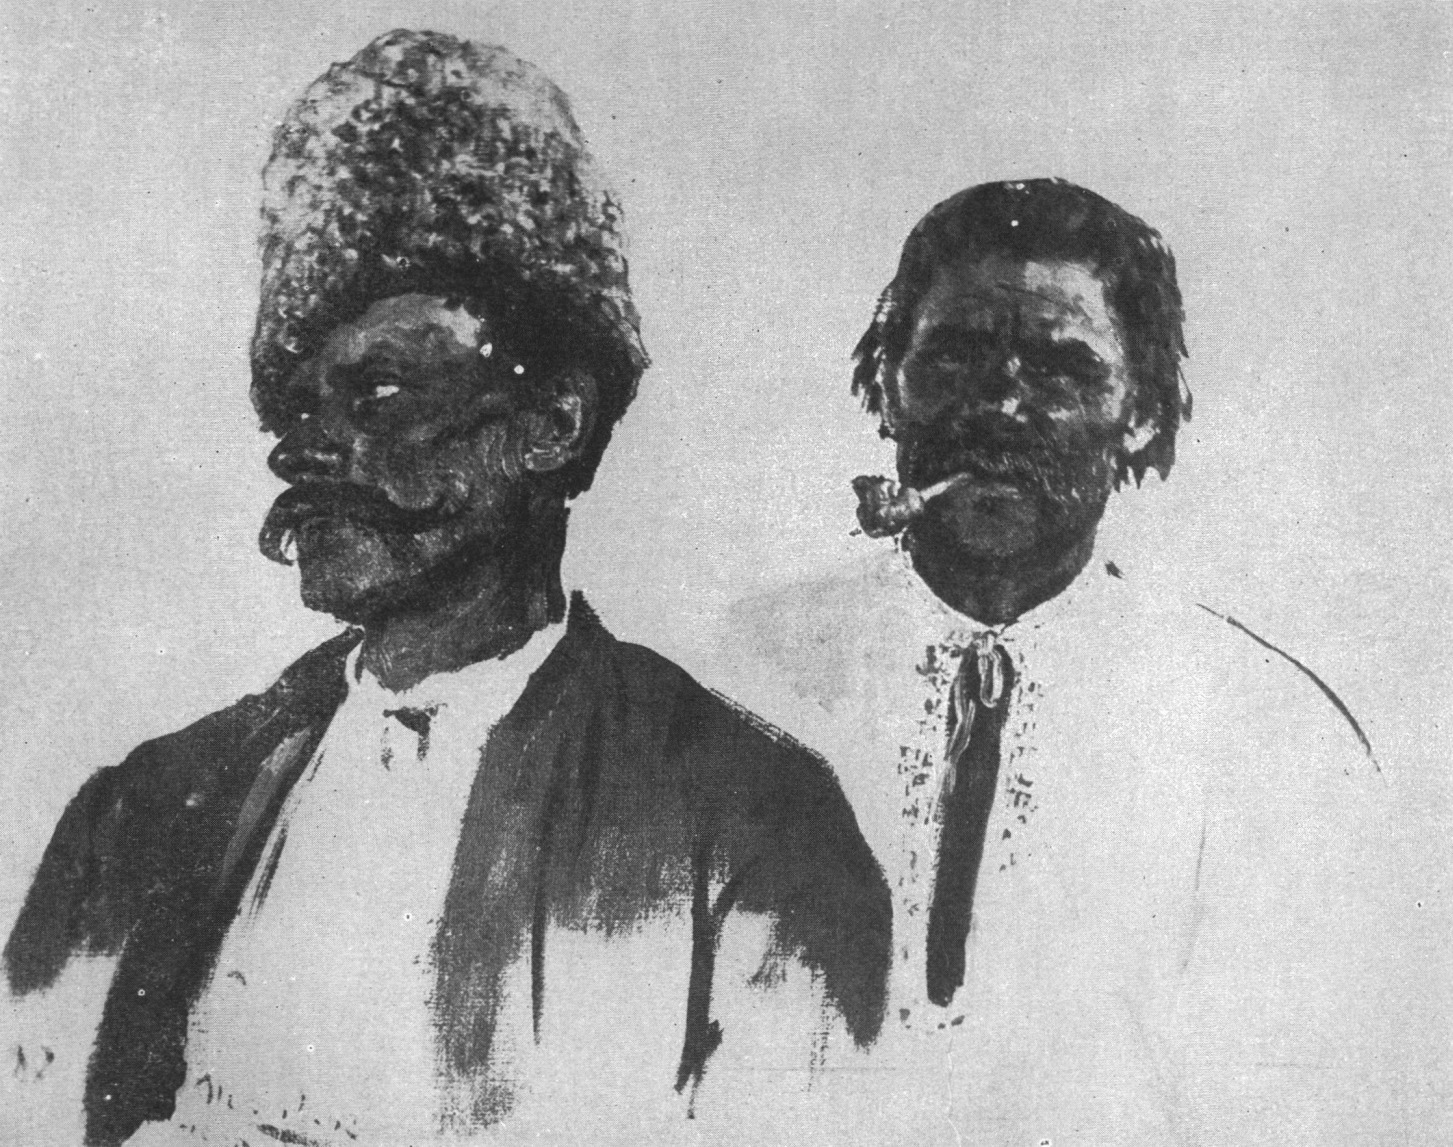 Крестьянин в шапке и крестьянин с трубкой. 1880